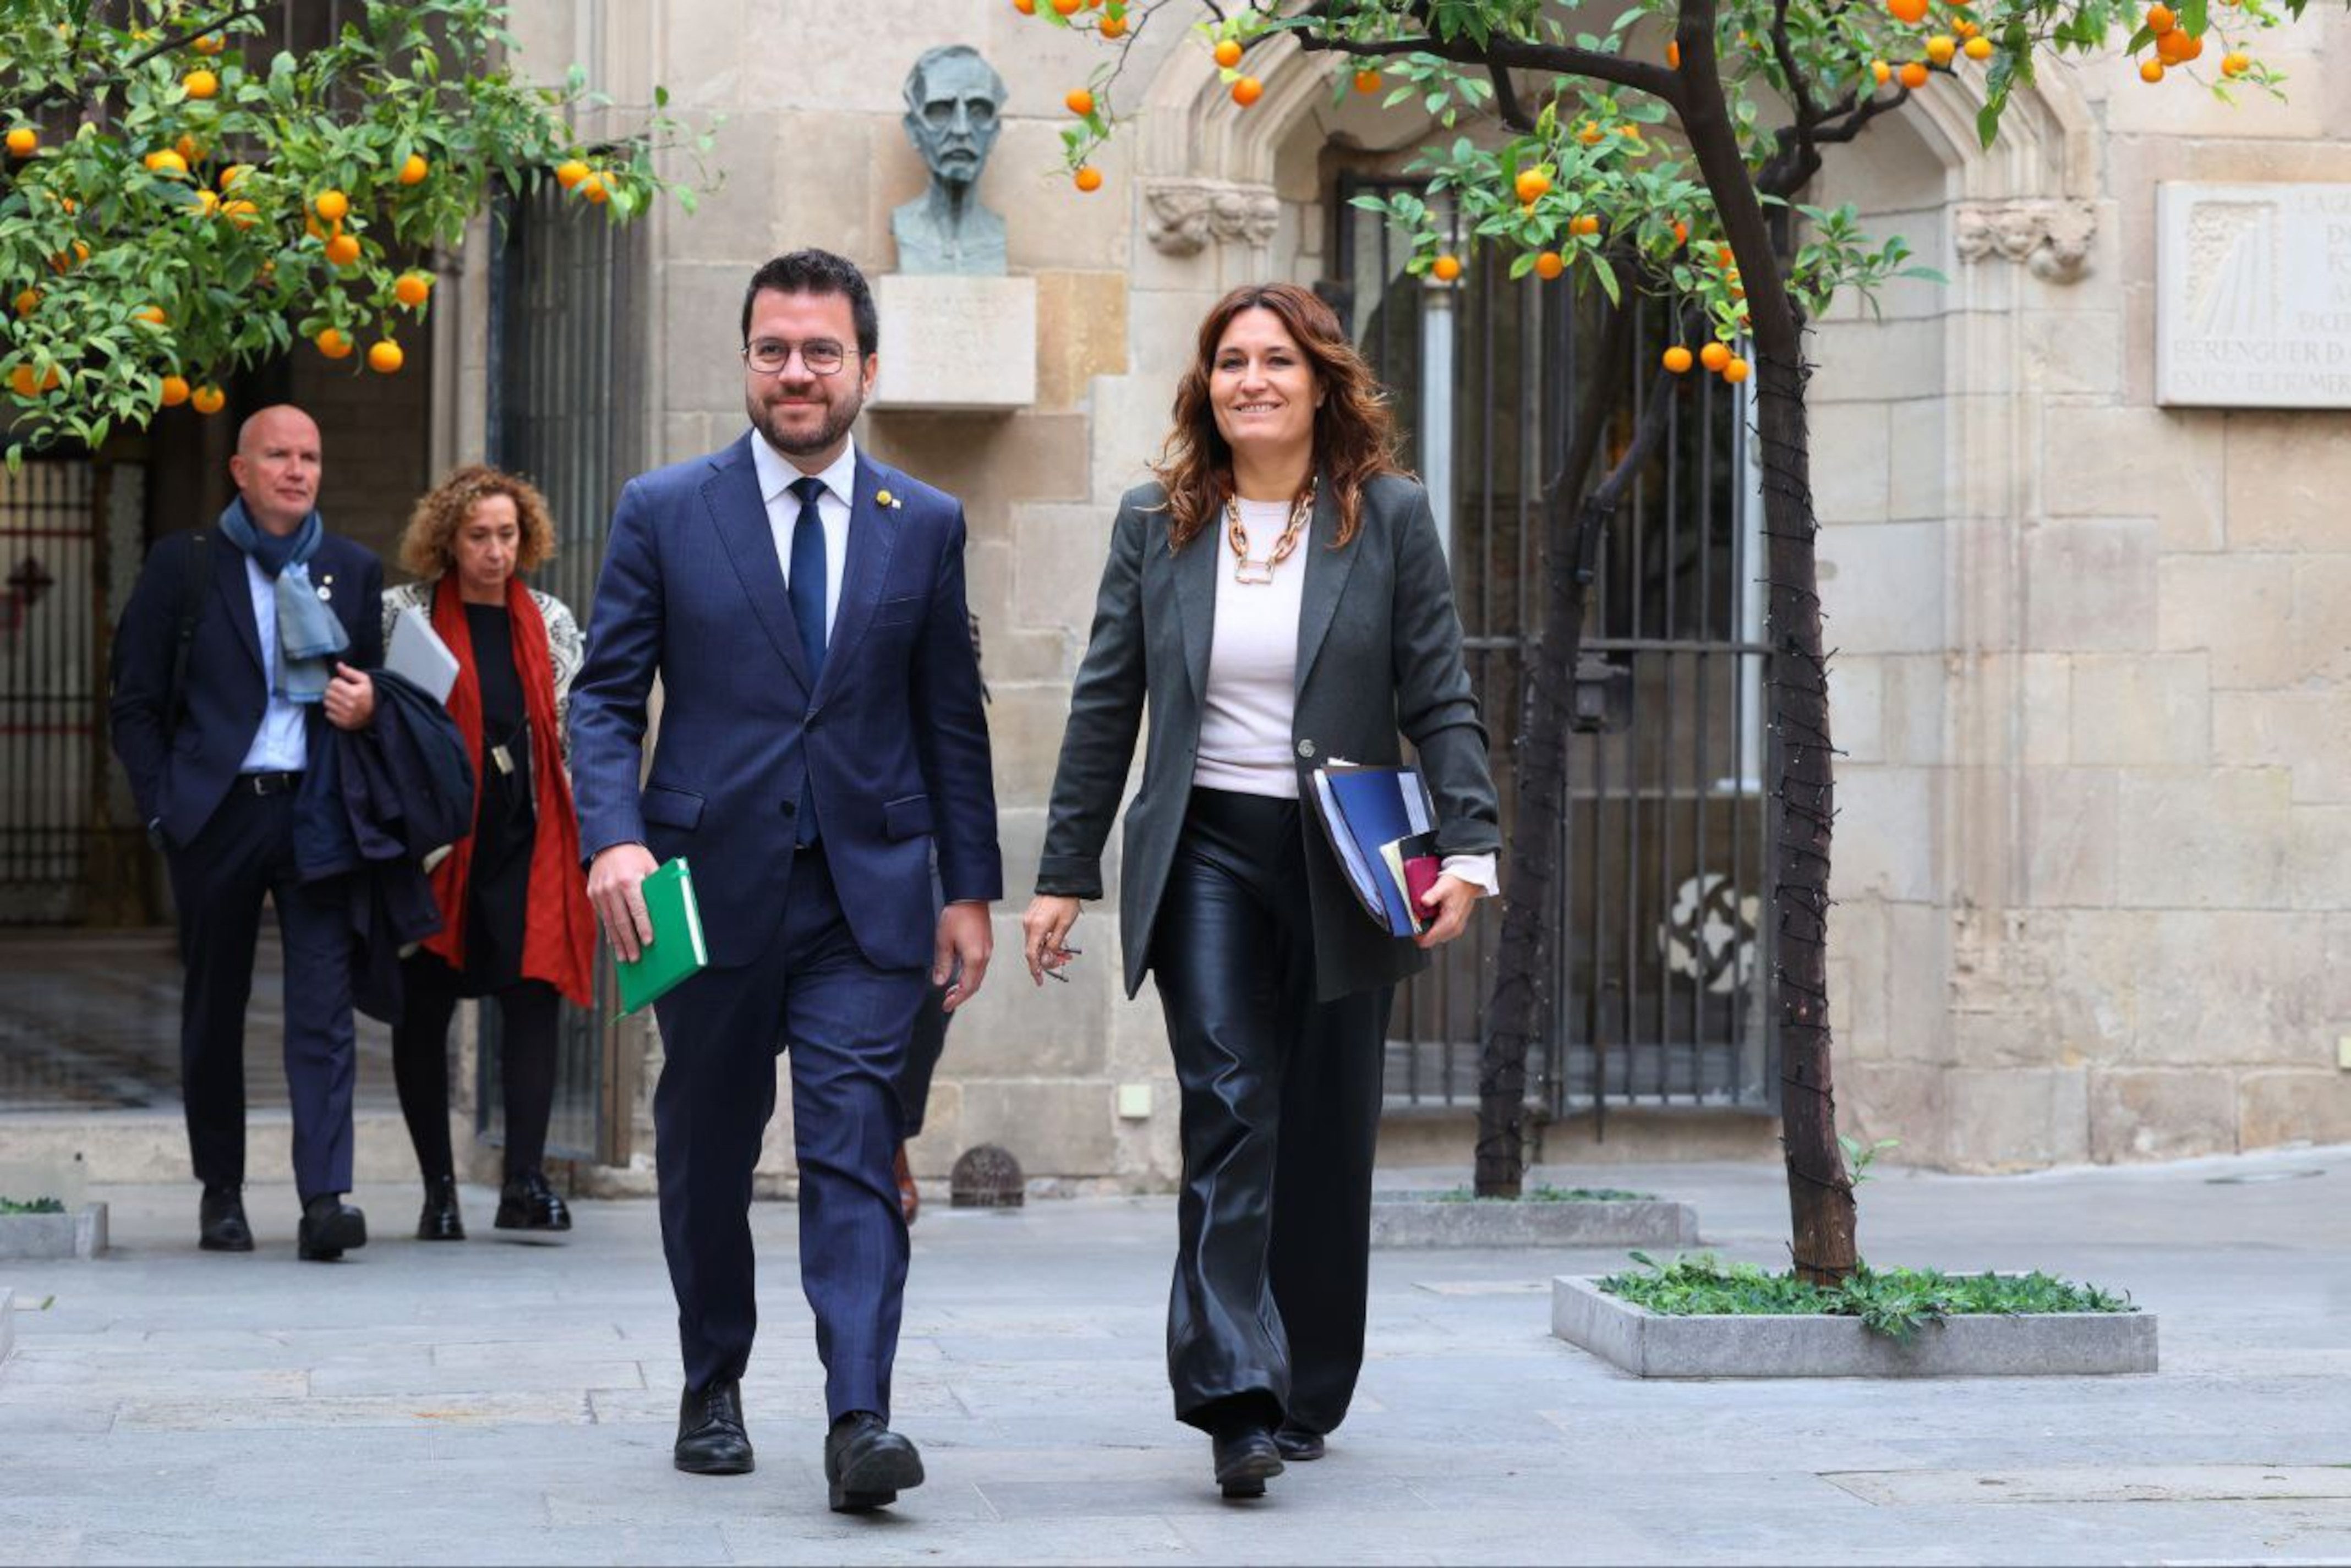 El Govern renya Moncloa per no haver aconseguit l'oficialitat del català: "S'han de posar les piles"